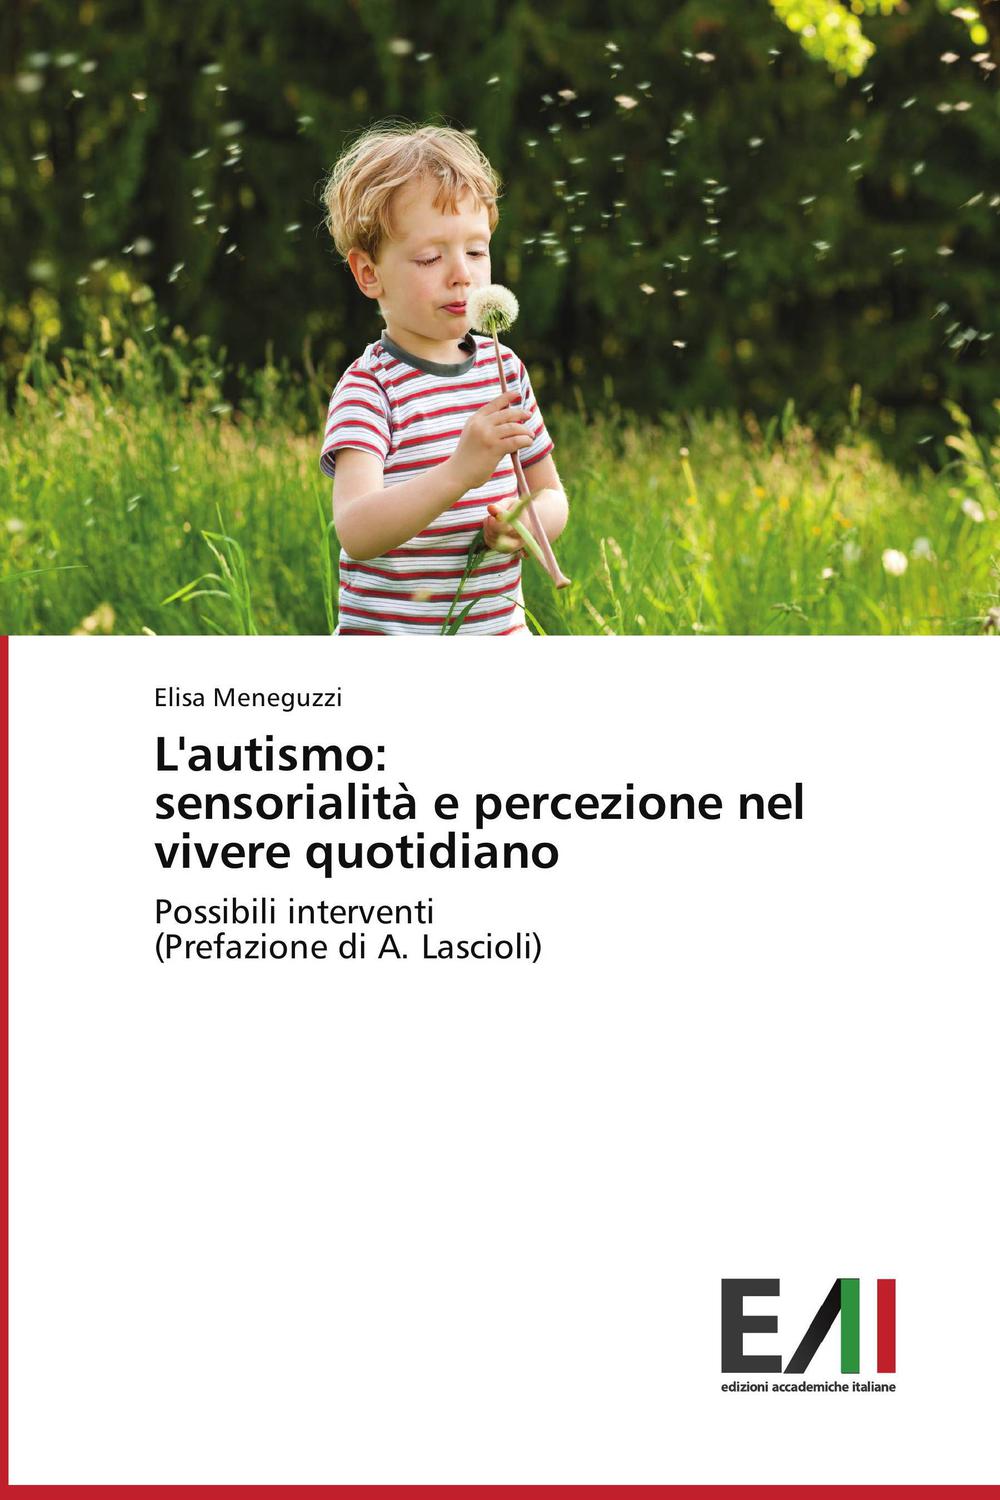 L'autismo: sensorialità e percezione nel vivere quotidiano - Elisa Meneguzzi